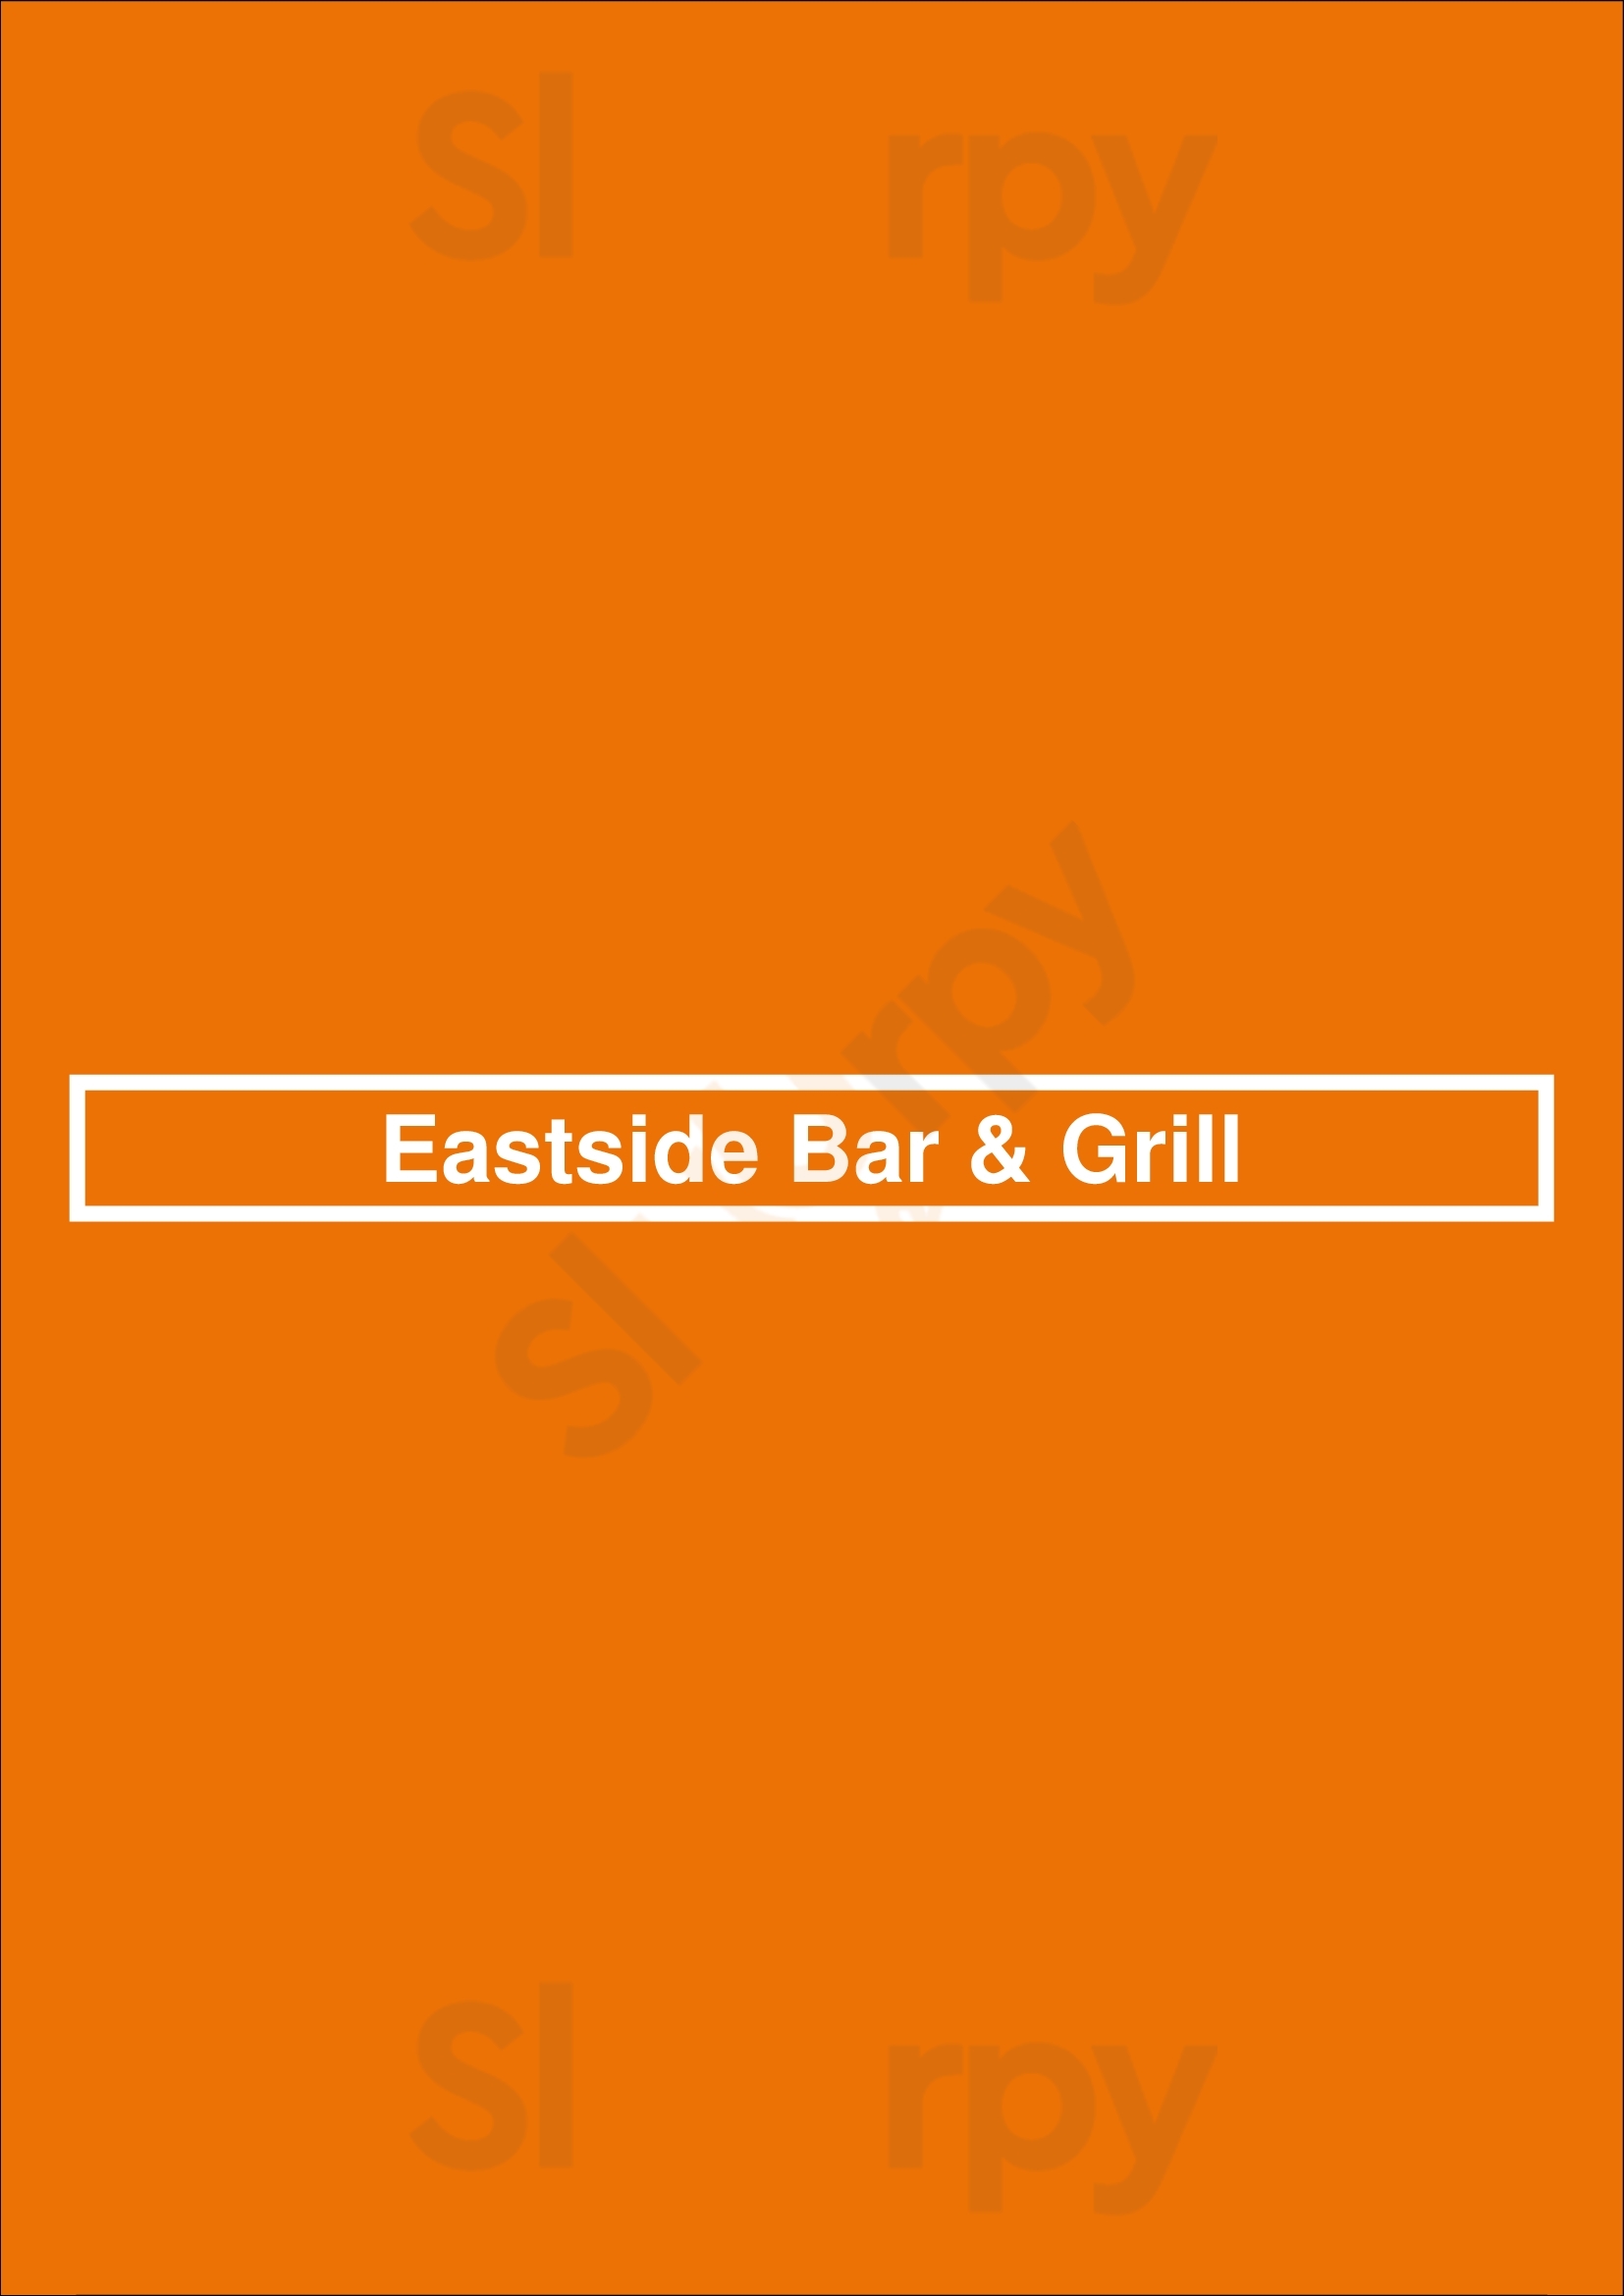 Eastside Bar & Grill Sydney Menu - 1